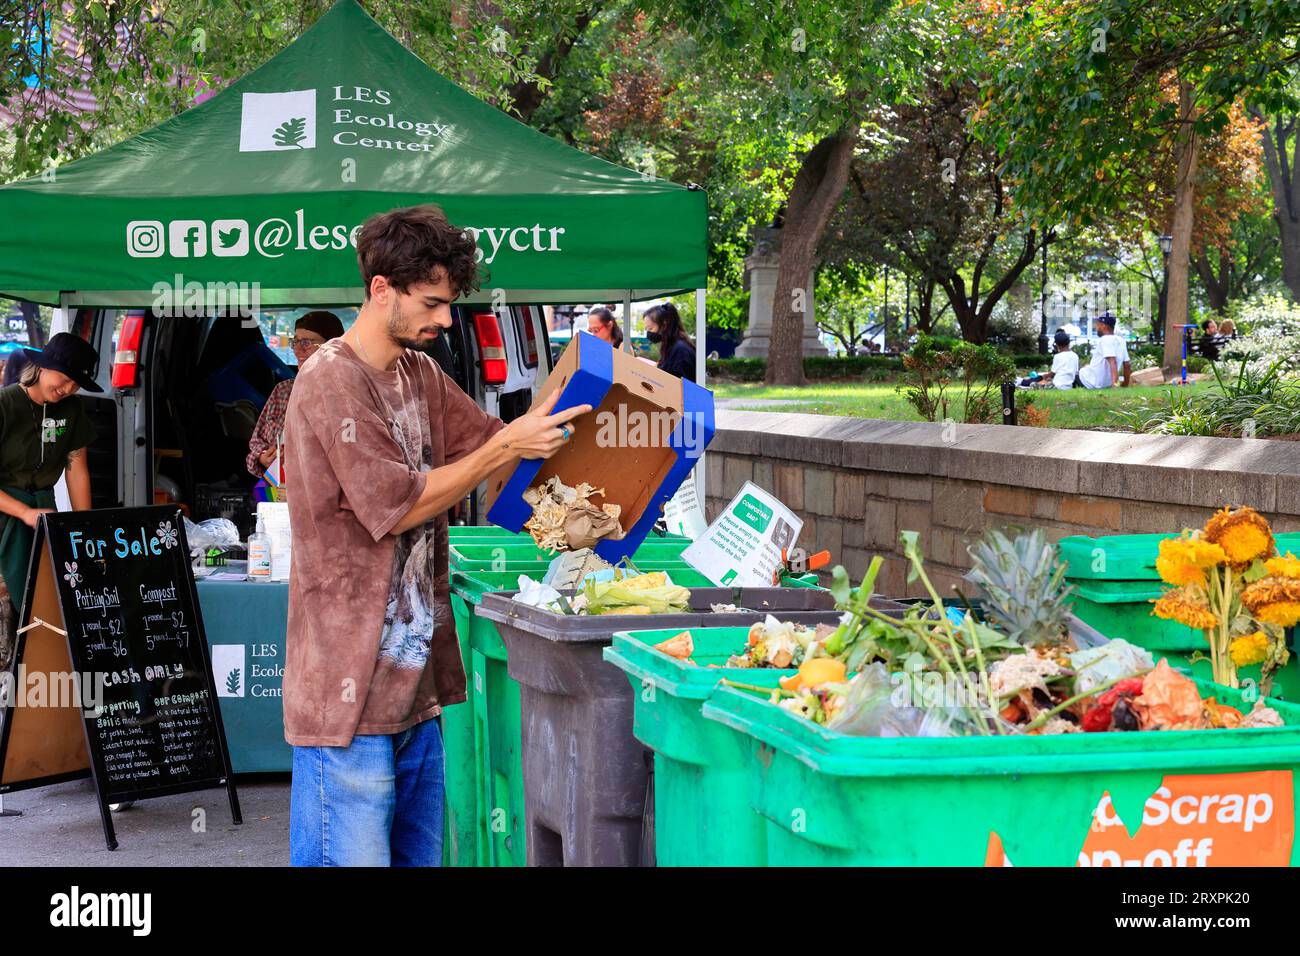 Eine Person wirft Lebensmittelreste und Papier am Compost-Abgabestand des LES Ecology Center im Union Square Greenmarket, New York City ab. Stockfoto